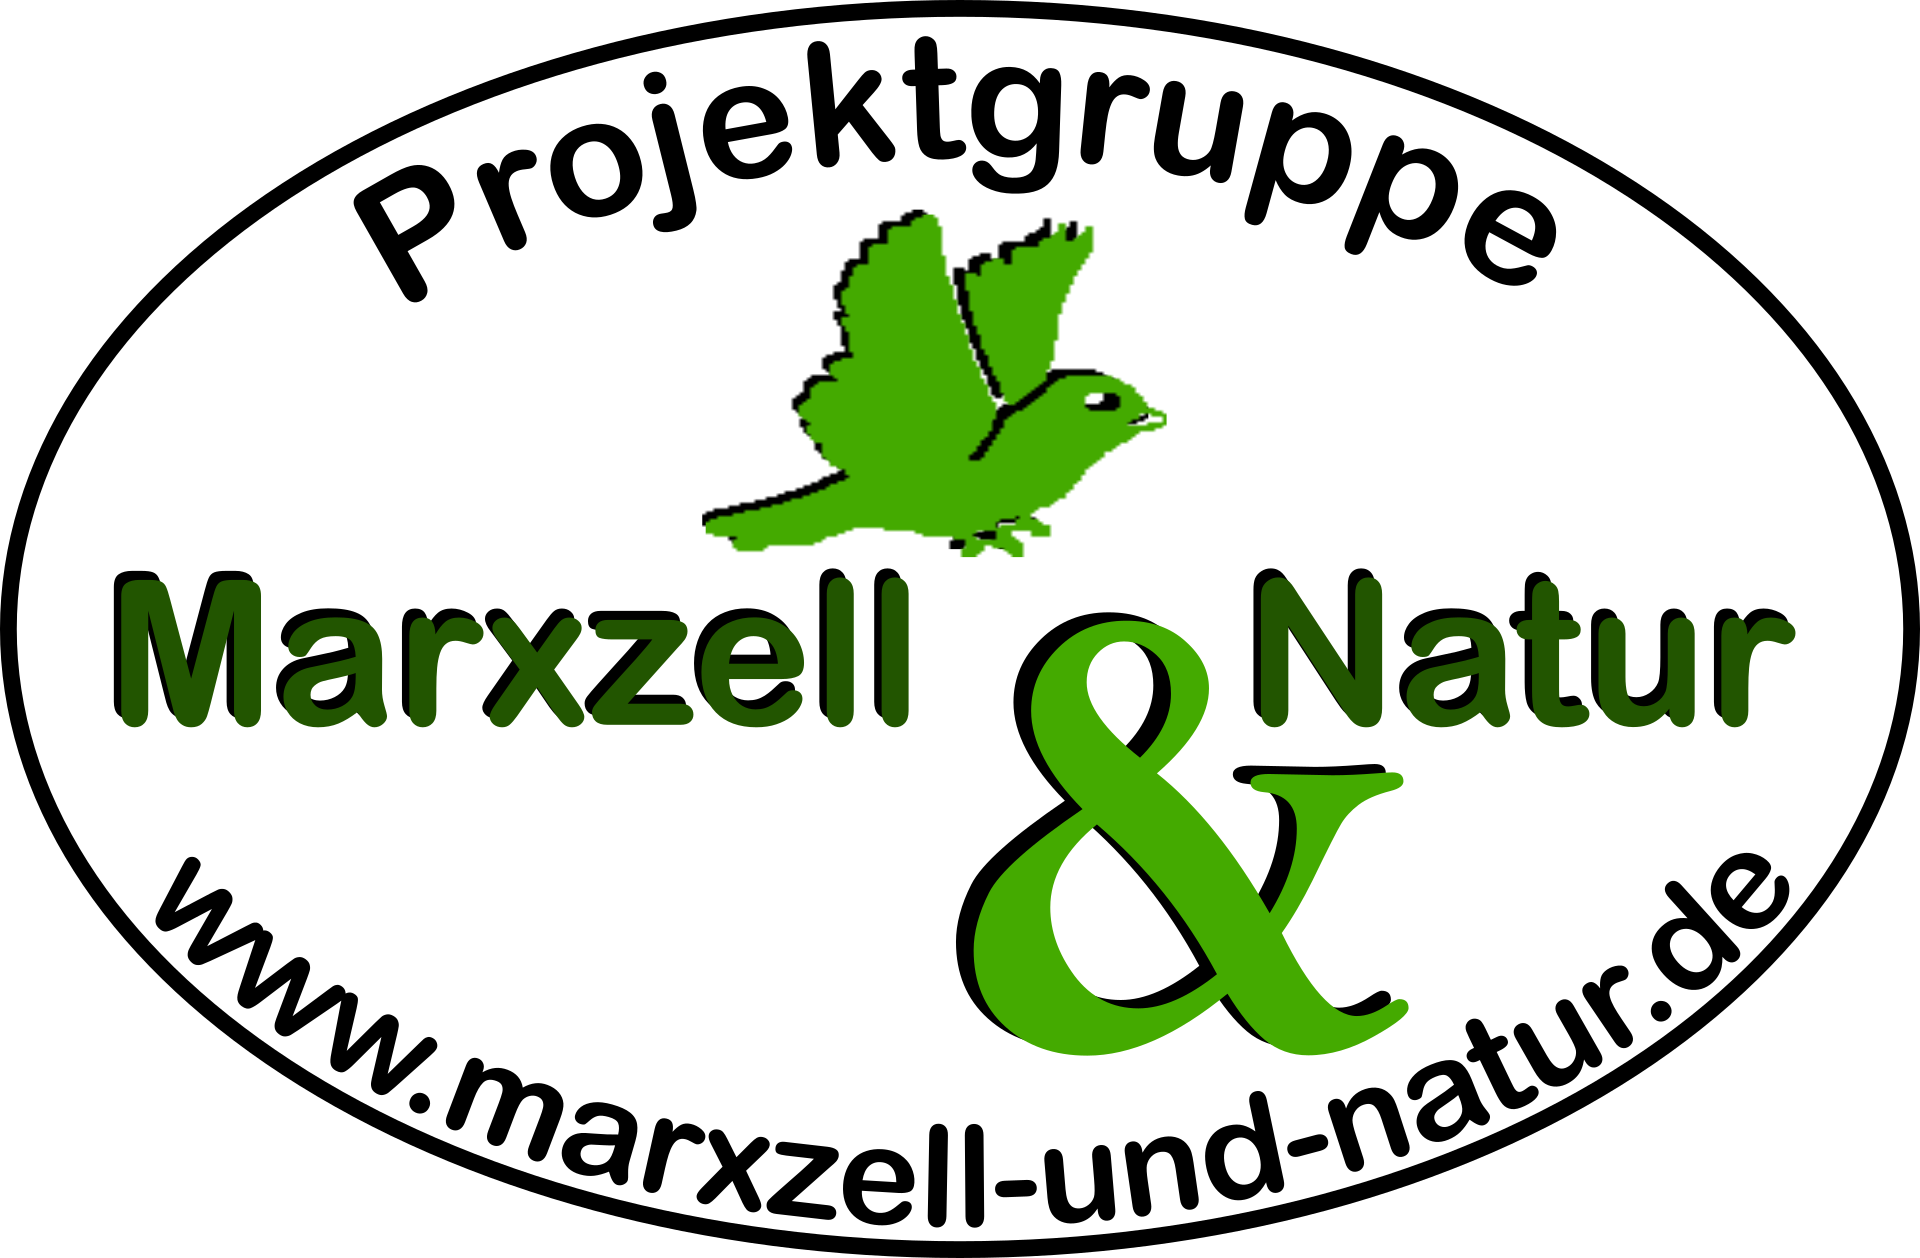 Marxzell & Natur